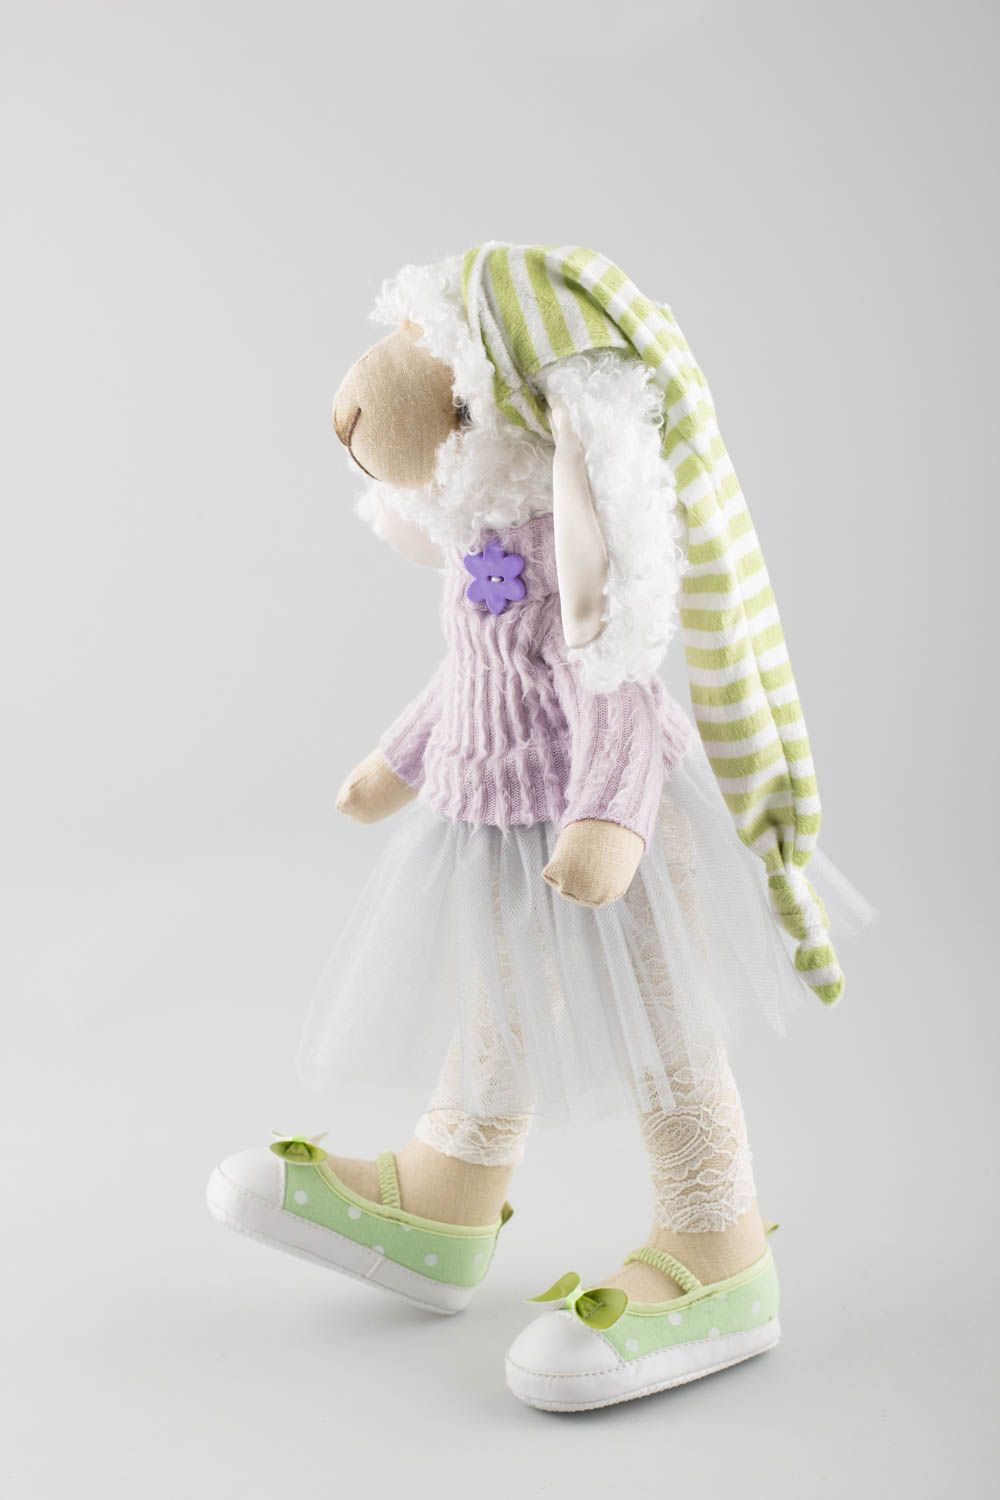 Textil Kuscheltier Schaf im Kleid niedlich Spielzeug für Kinder und Deko foto 3